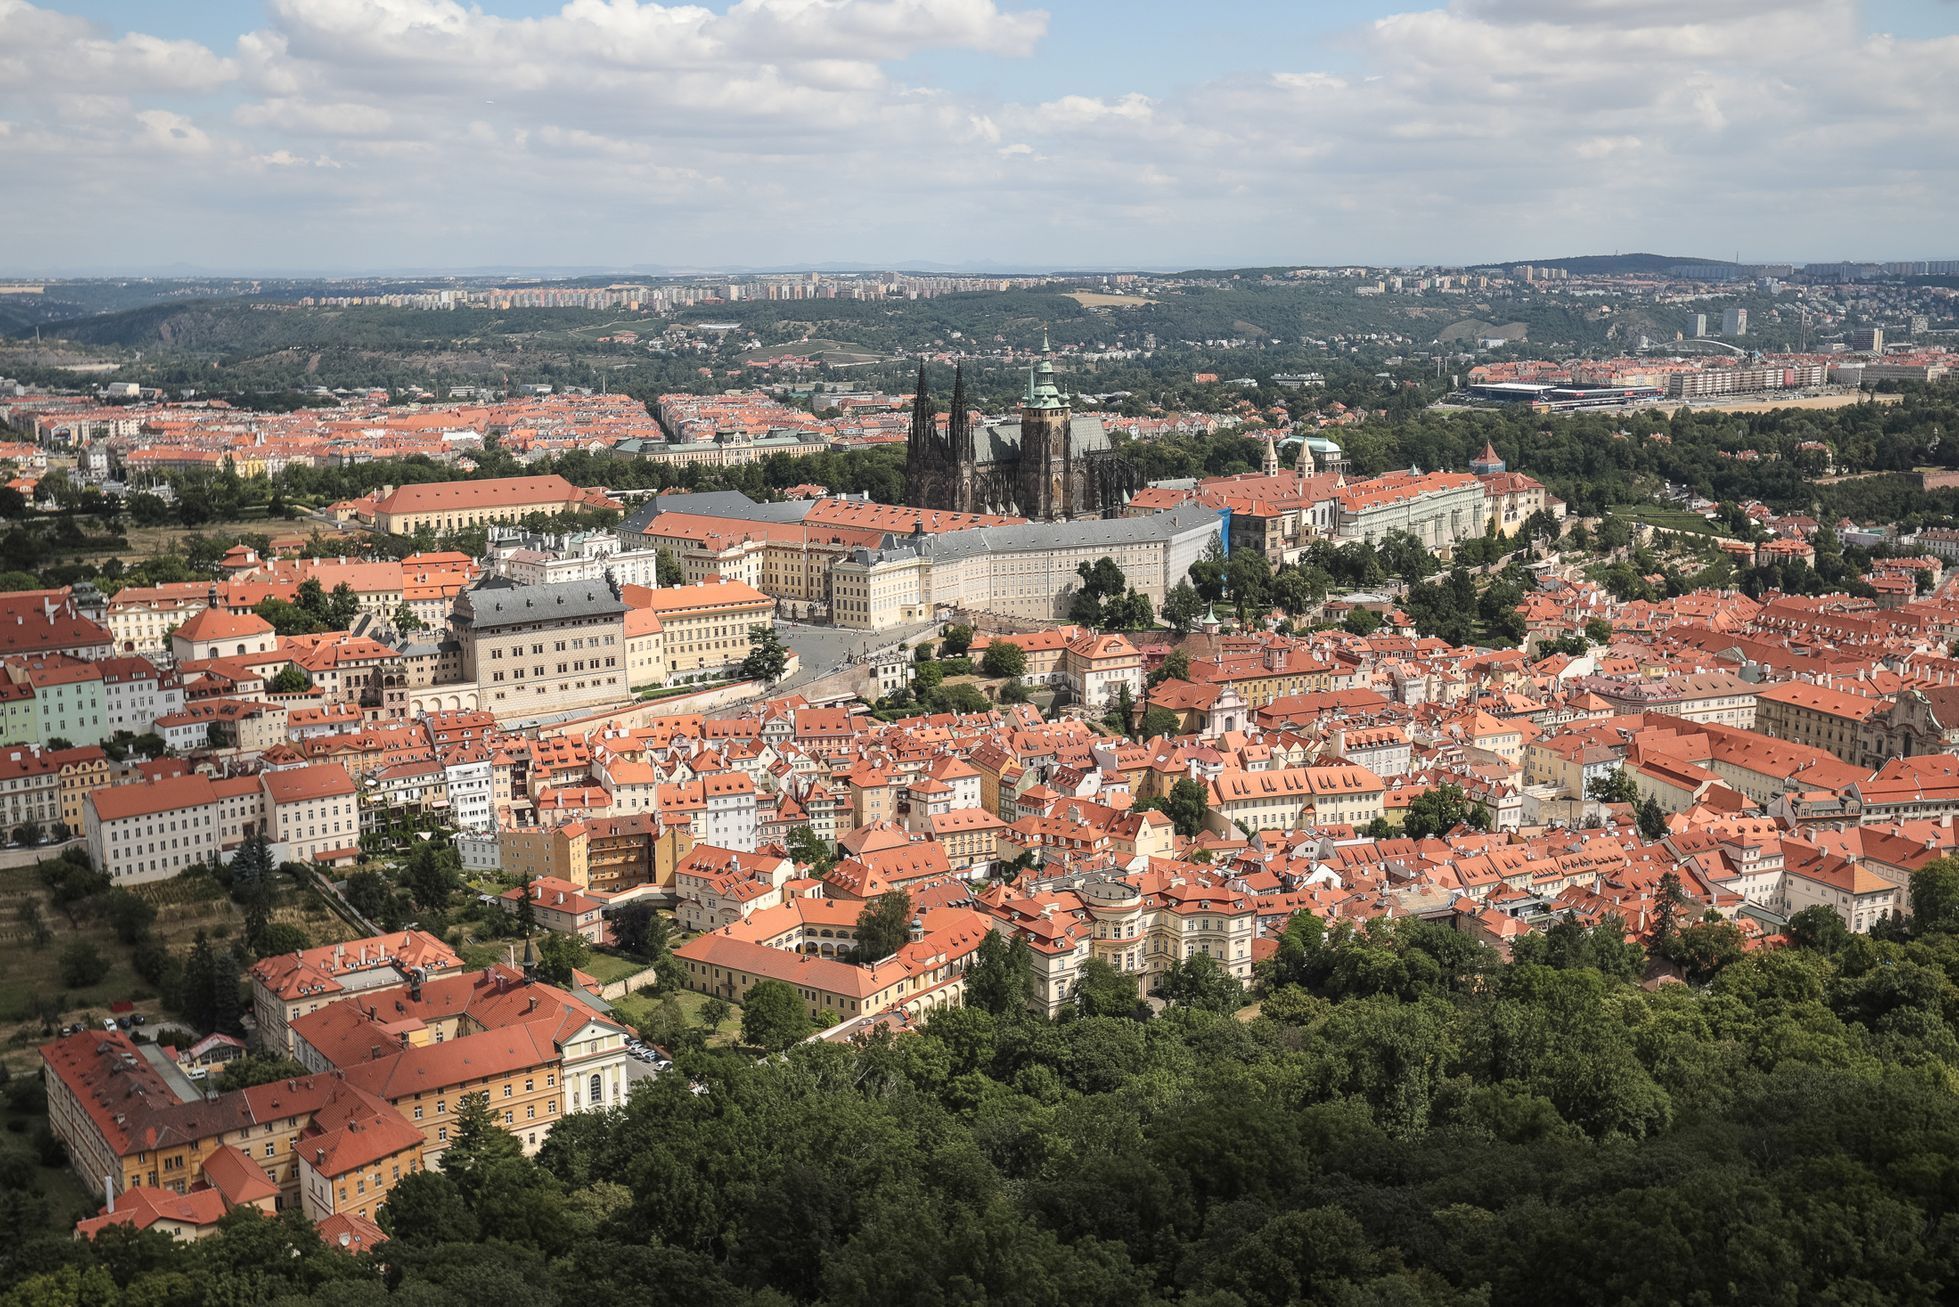 Rozhledna Petřín - osvětlení, výhled, Praha, panorama - Pražský hrad, Malá strana